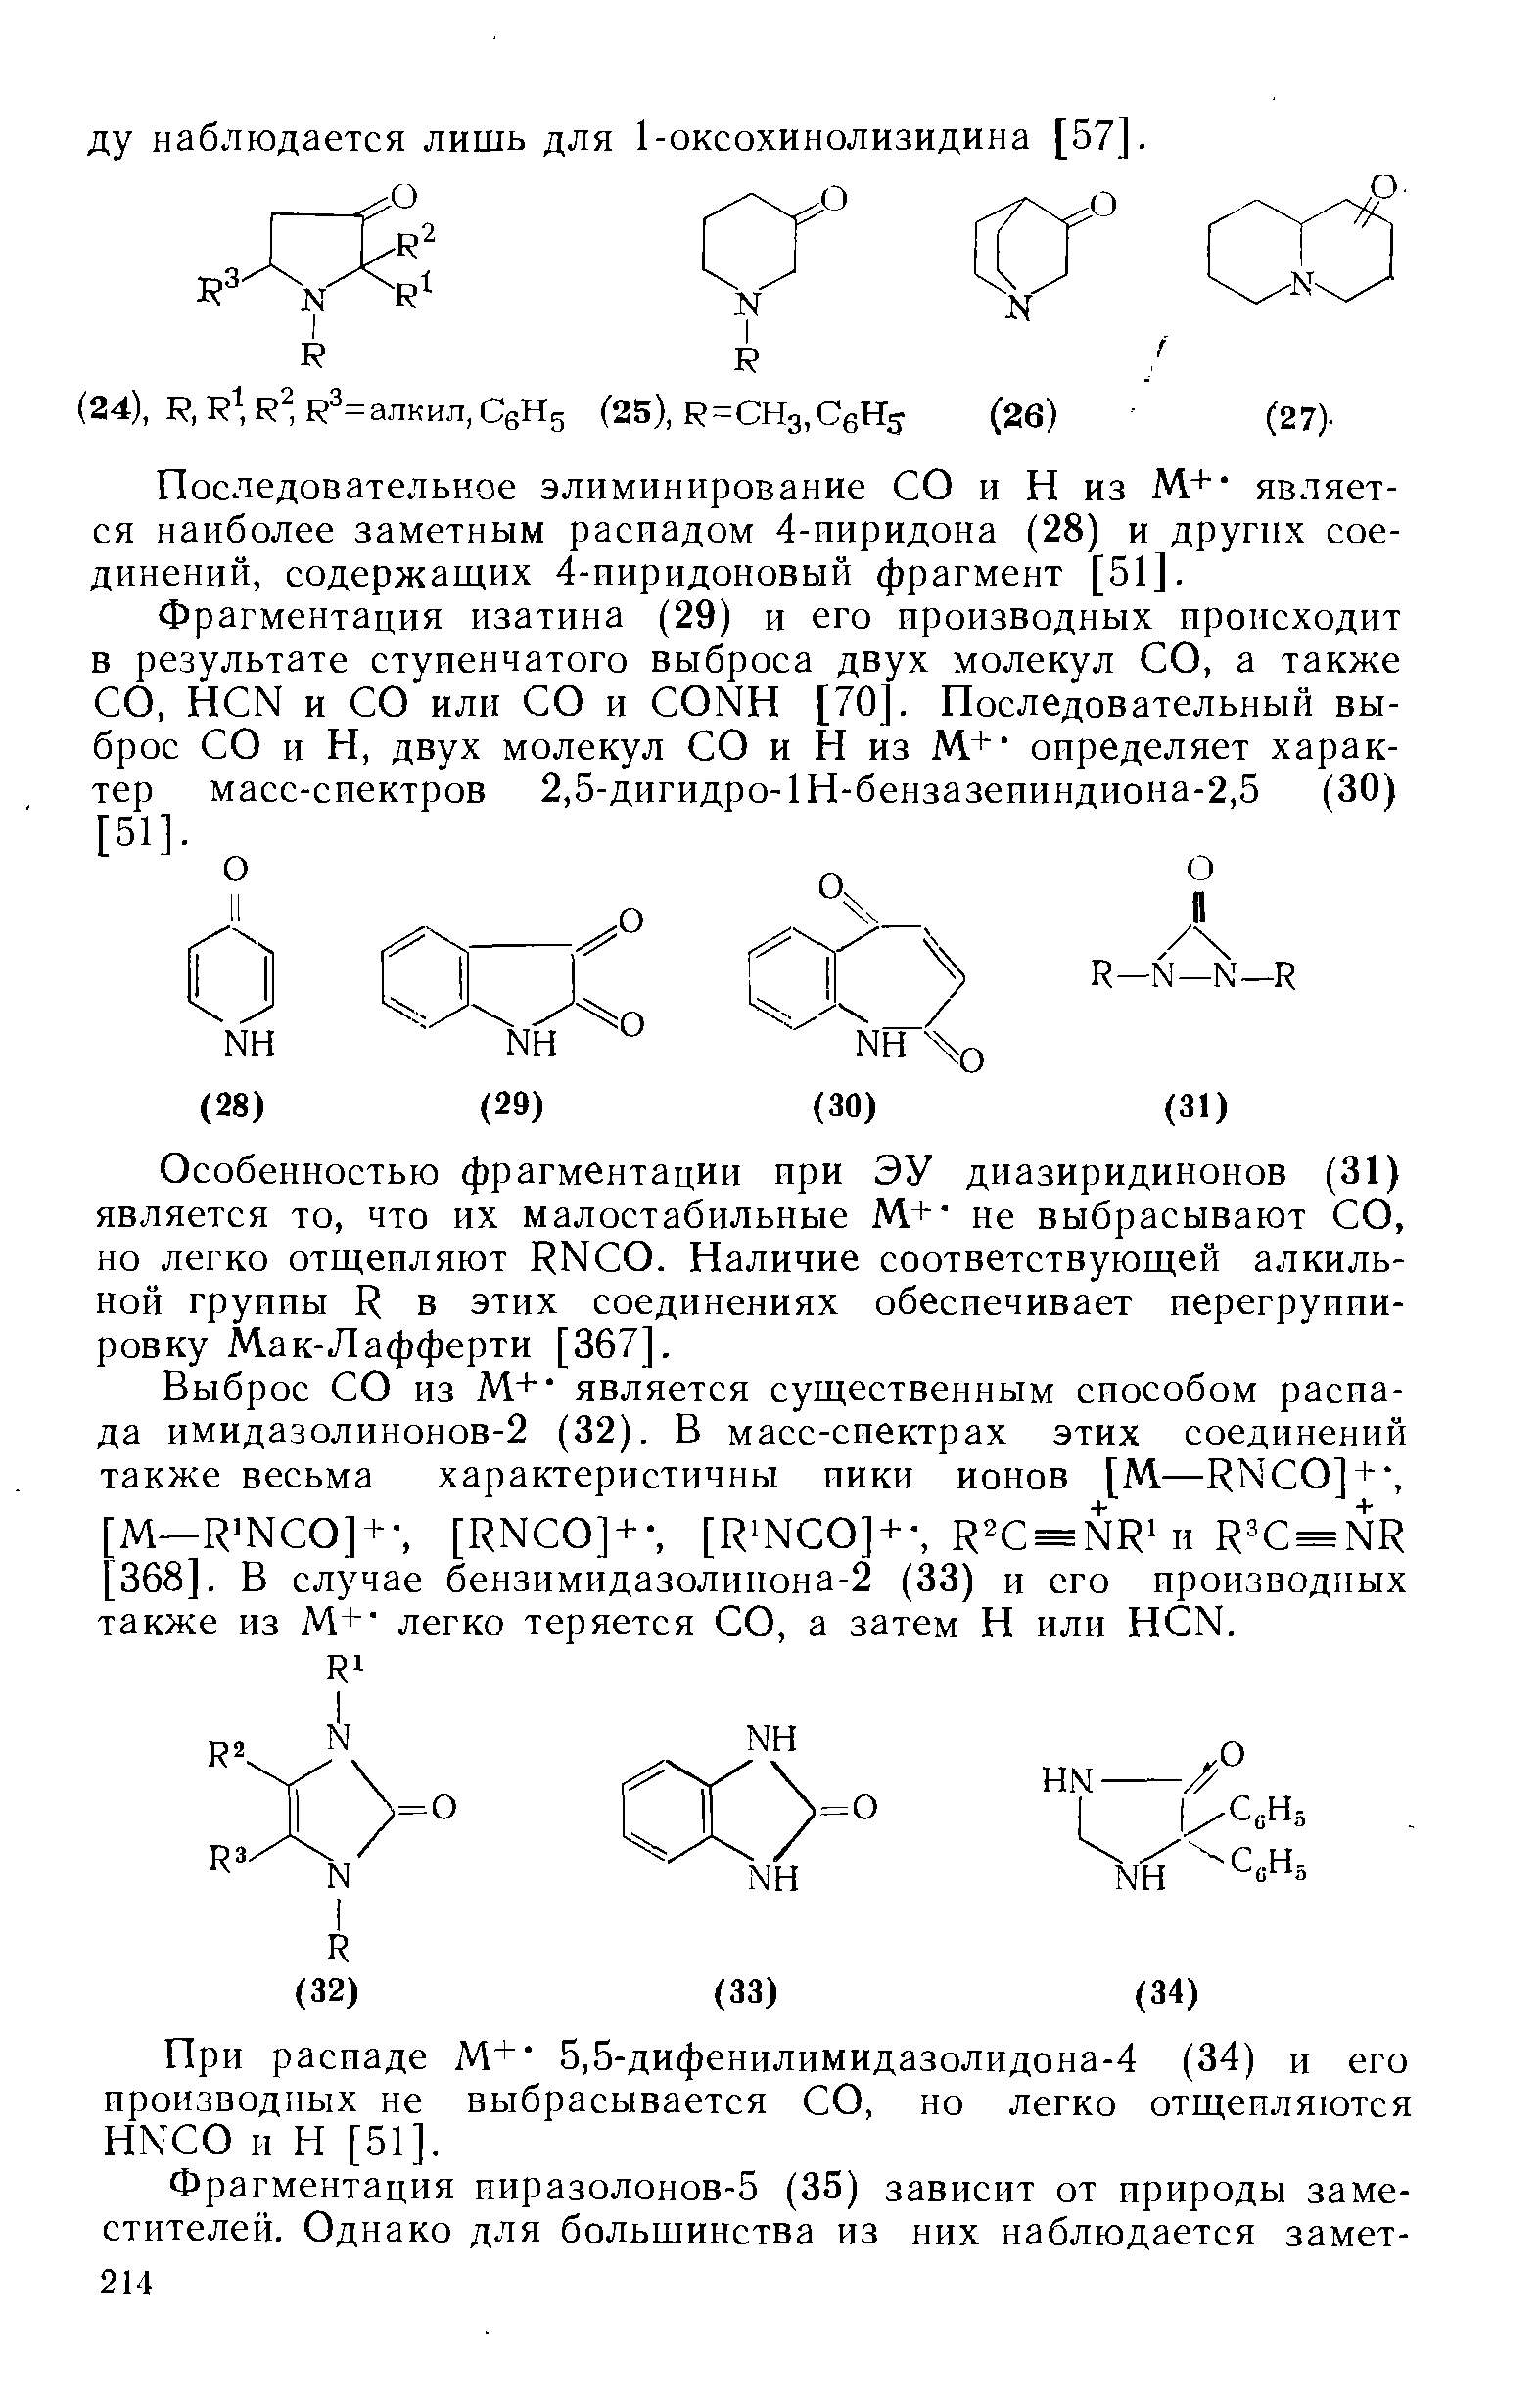 Фрагментация изатина (29) и его производных происходит в результате ступенчатого выброса двух молекул СО, а также СО, H N и СО или СО и ONH [70]. Последовательный выброс СО и Н, двух молекул СО и Н из М.+ определяет характер масс-сиектров 2,5-дигидро-1Н-бензазеииндиона-2,5 (30) [51].